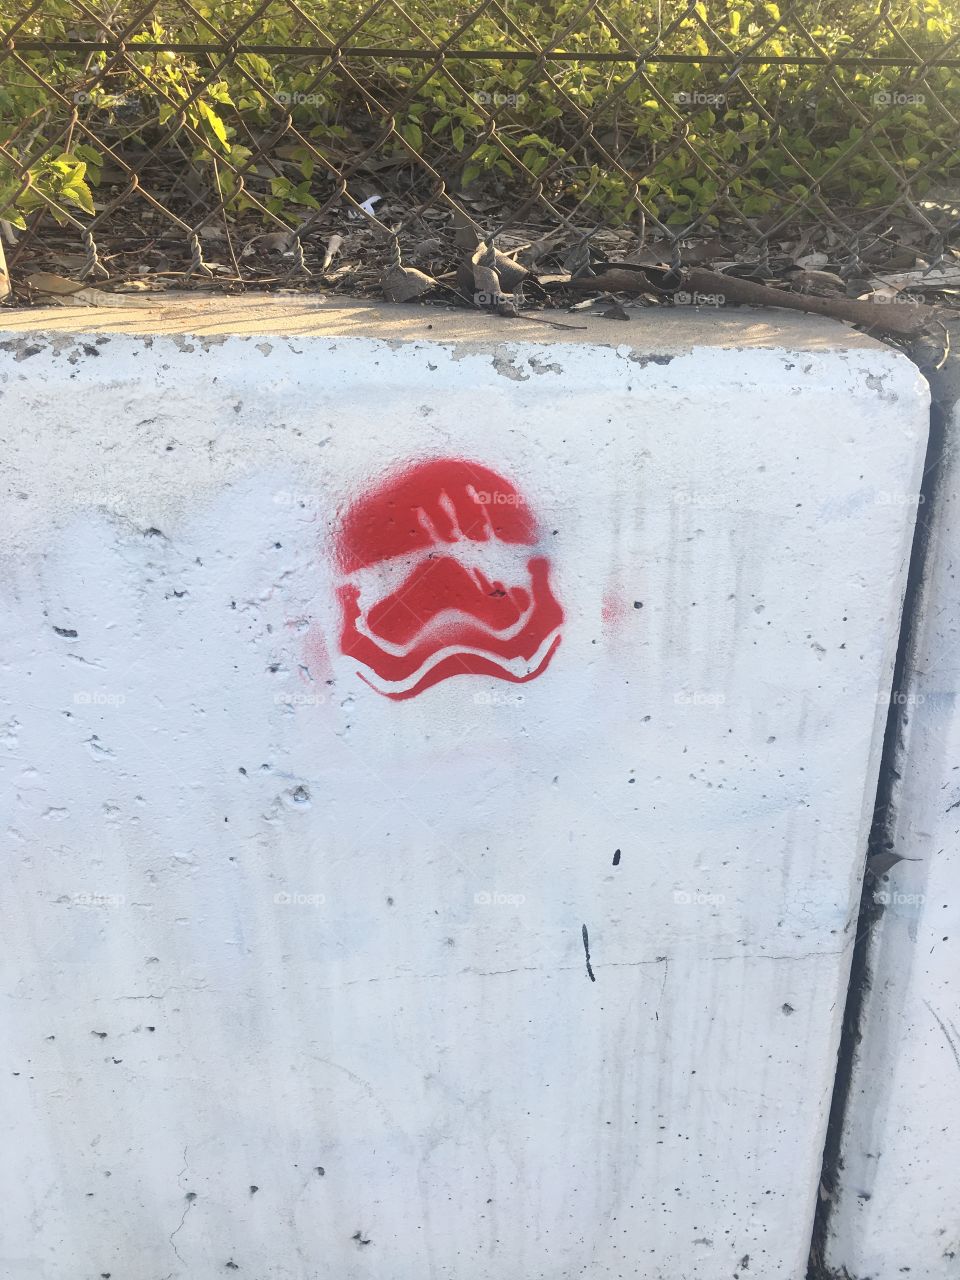 Star Wars graffiti